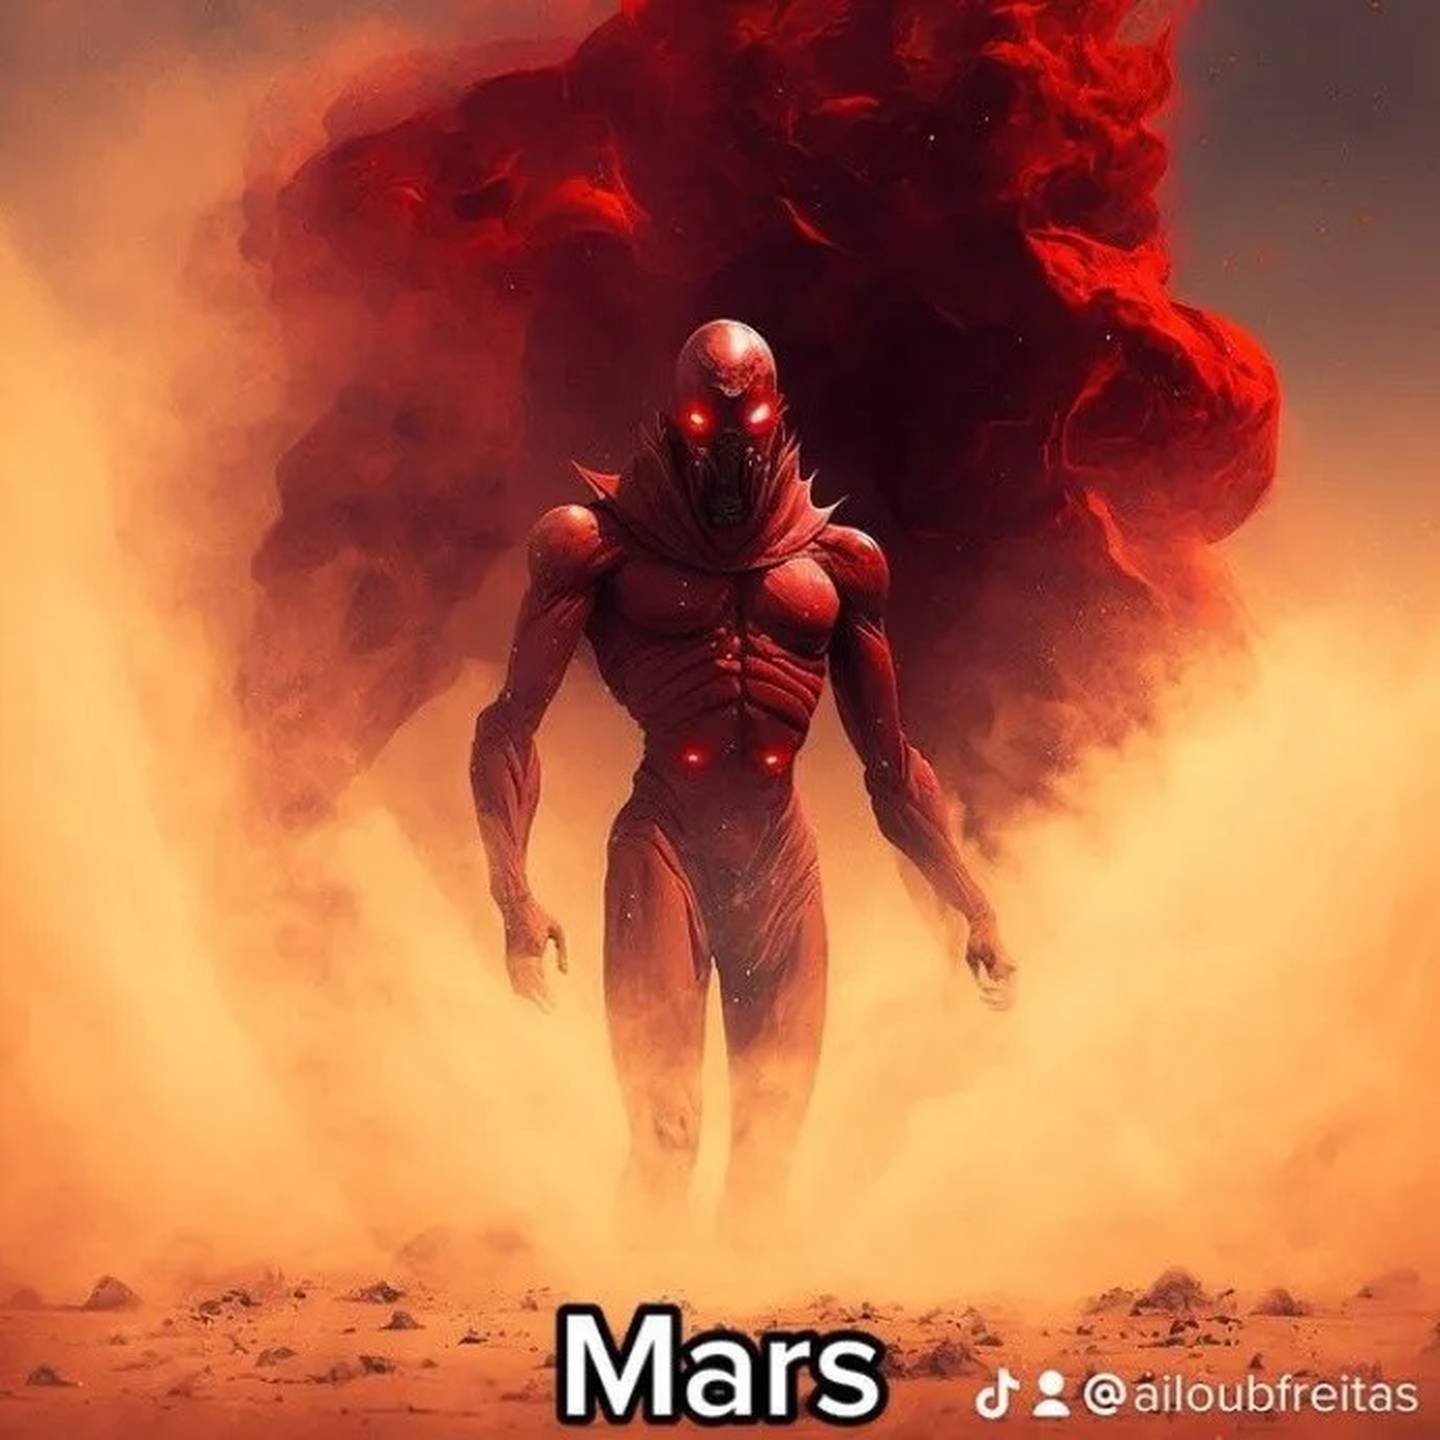 Mars AI